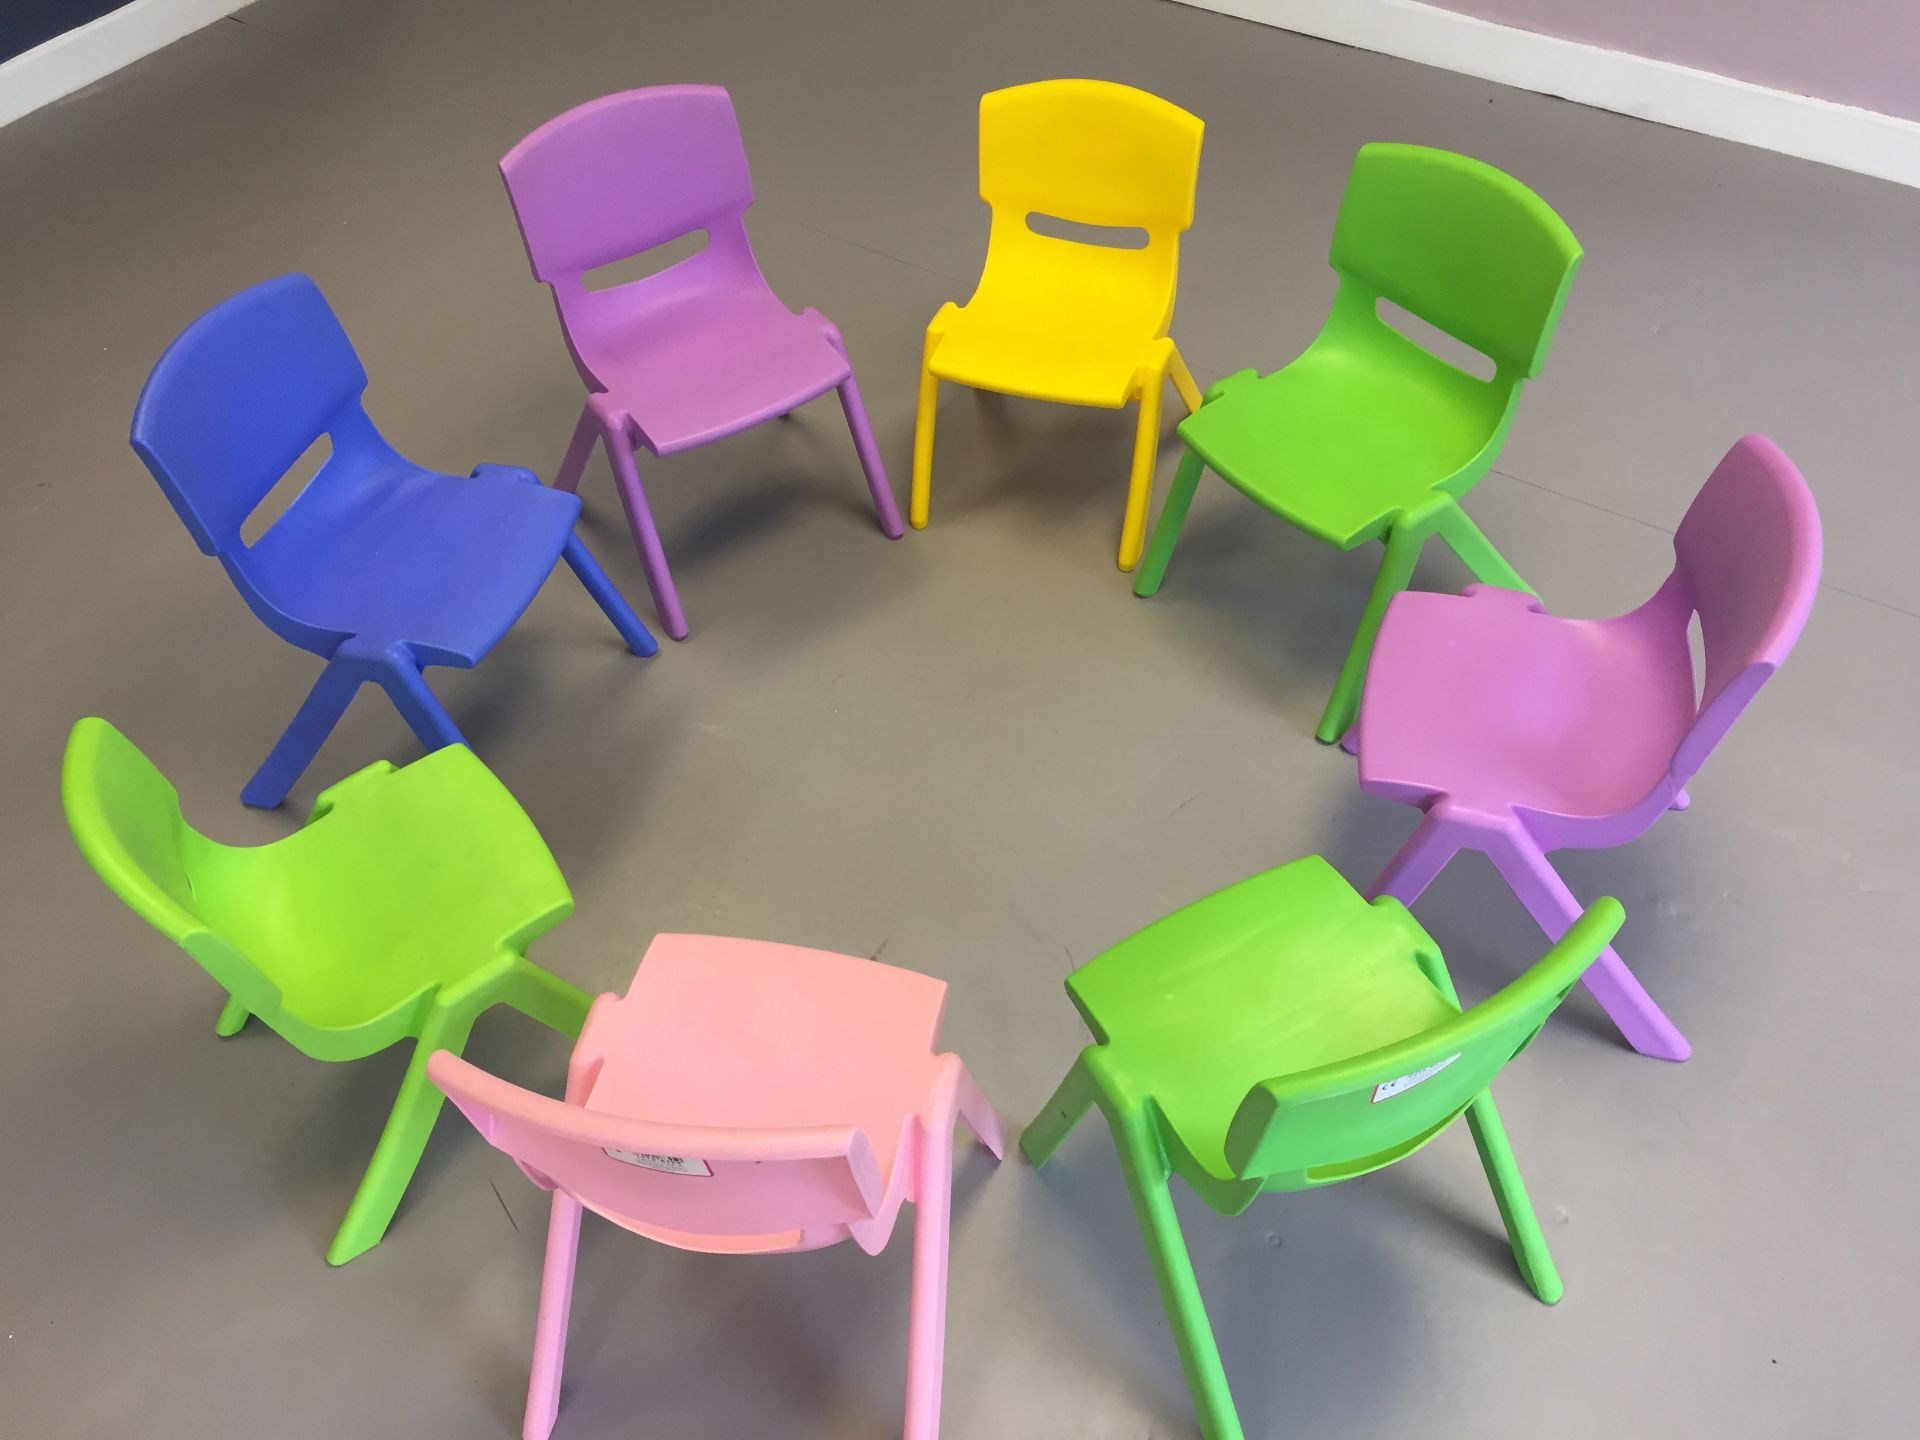 Childrens/ Kindergarten Chair set